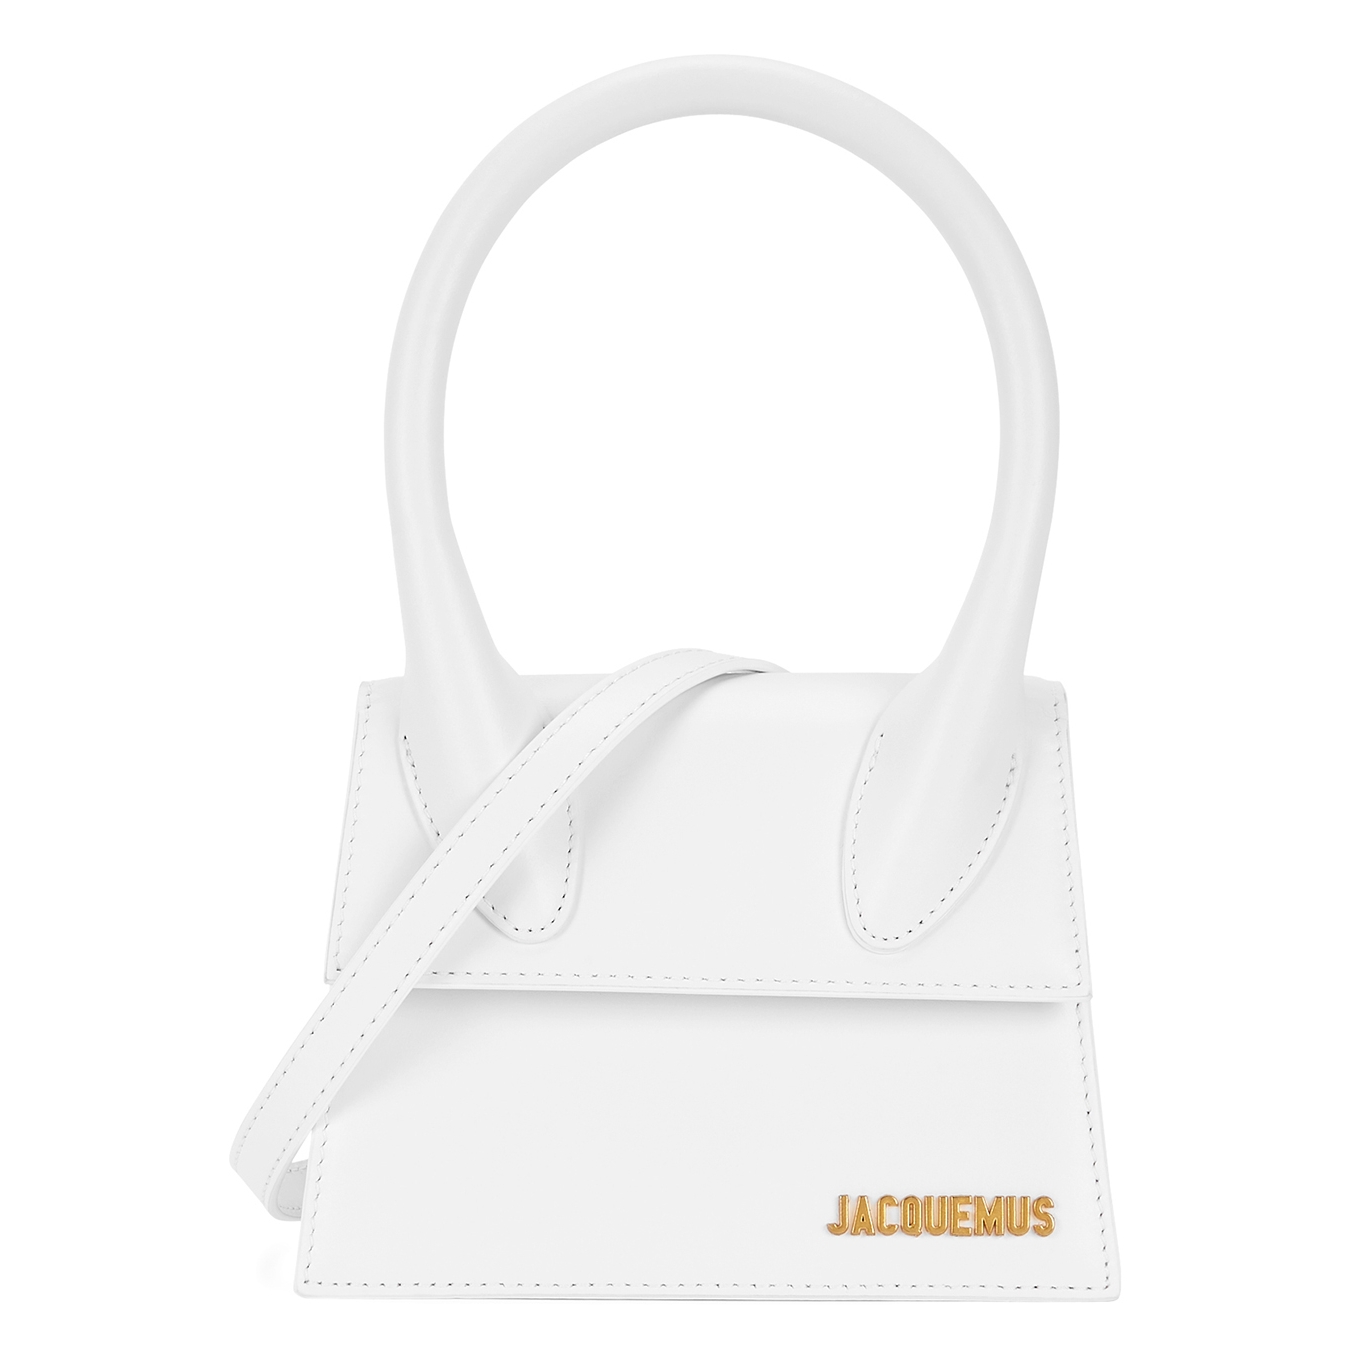 Jacquemus Le Chiquito Moyen white top handle bag - Harvey Nichols